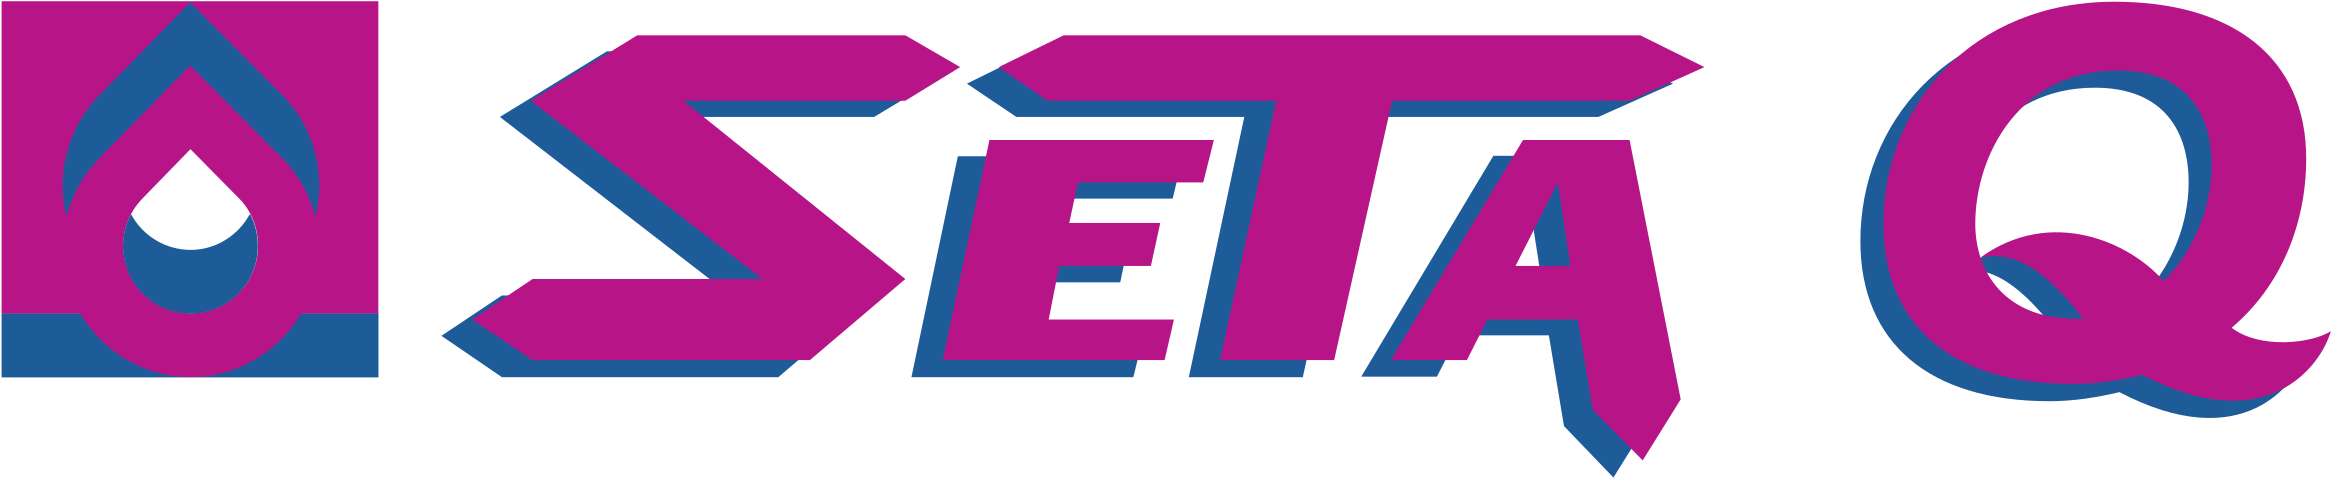 Seta Logo Design PNG image